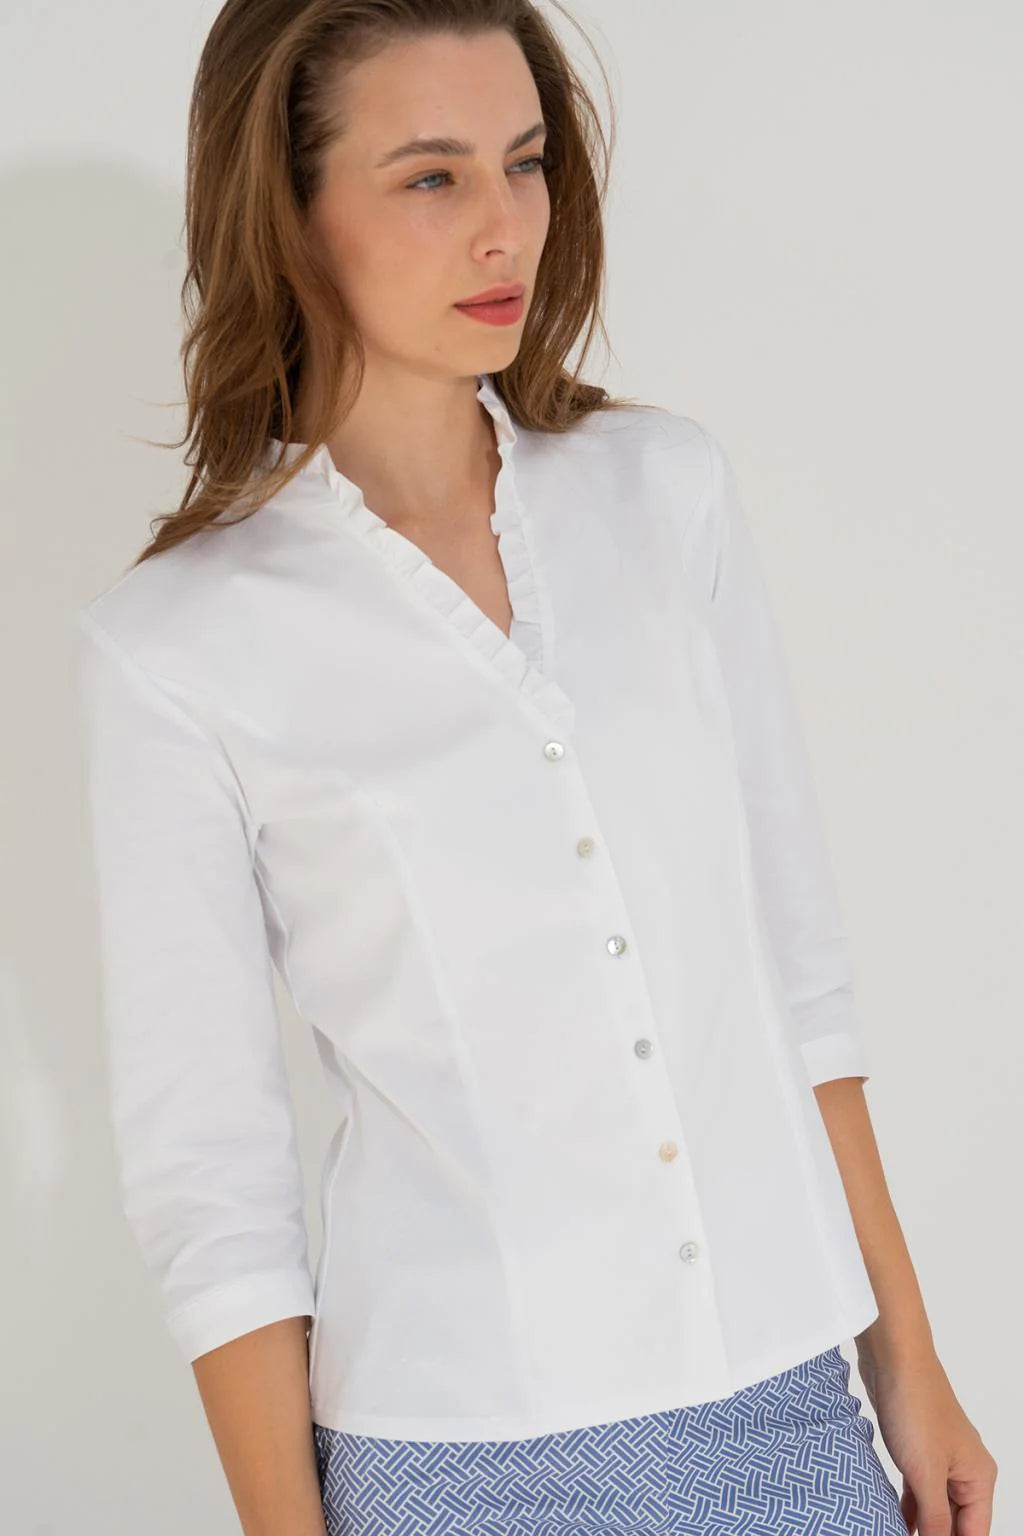 Calmi 2 Barlioche White Frill Shirt